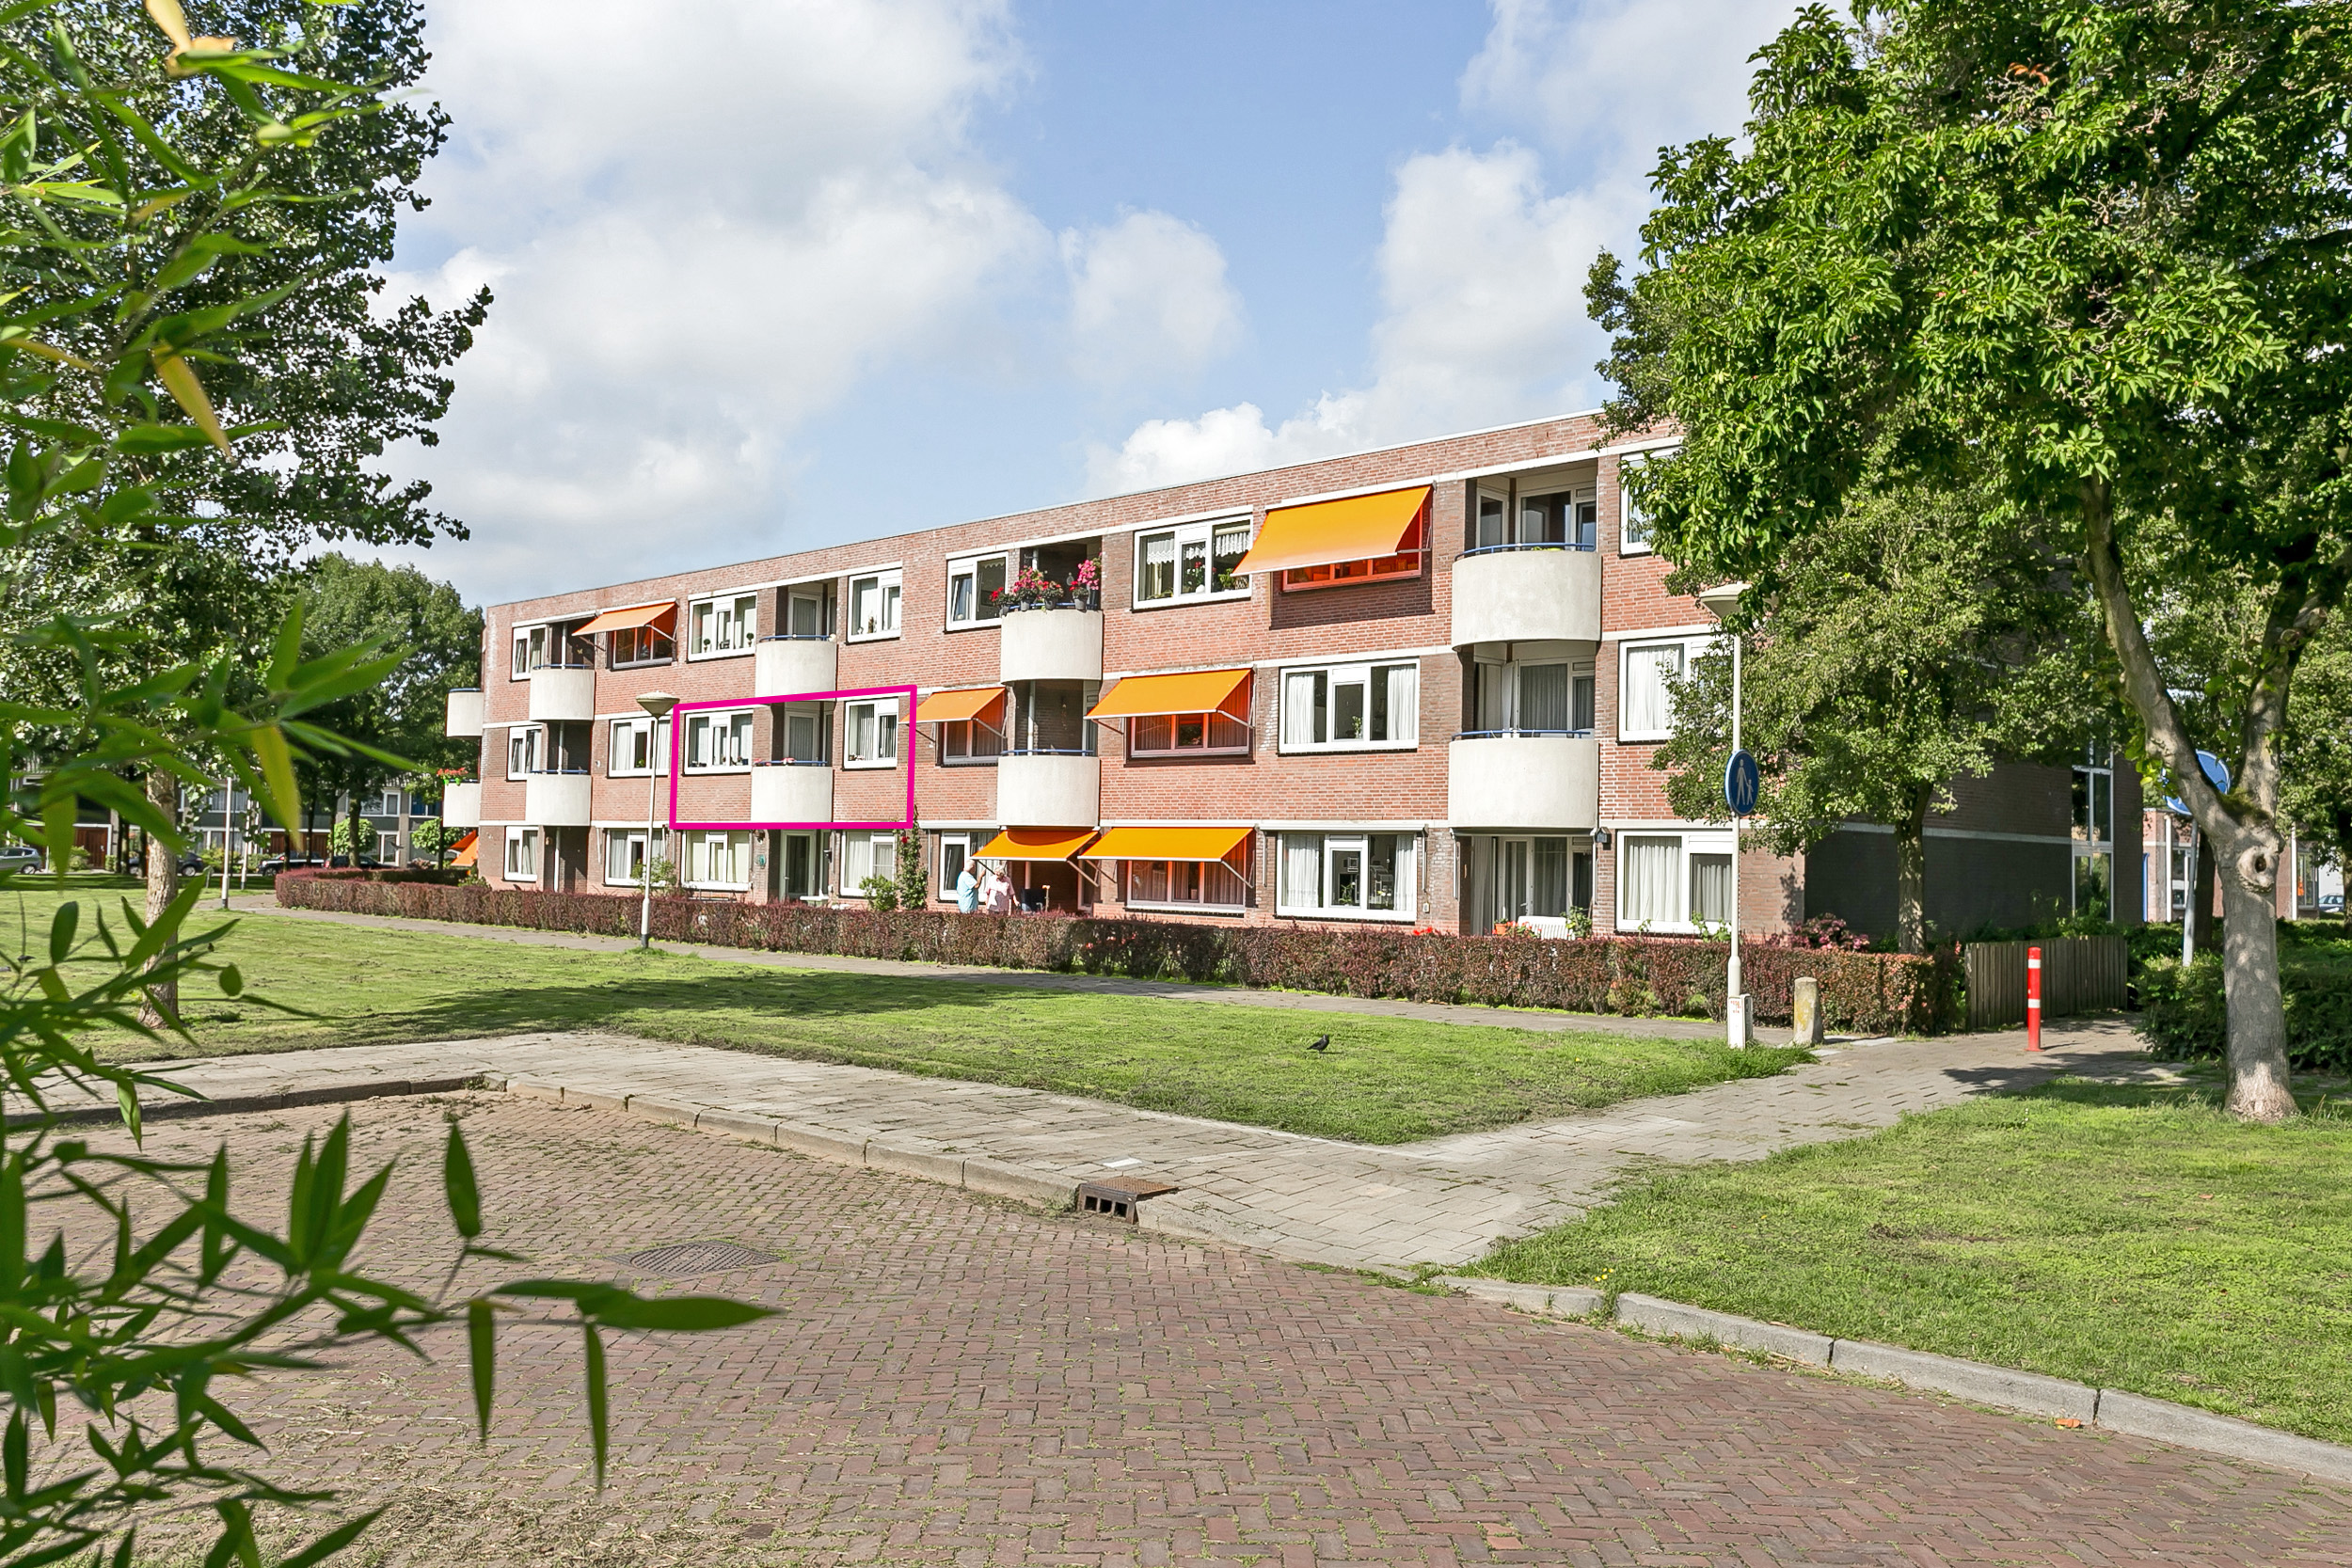 Rijnauwenstraat 21A, 4834 LK Breda, Nederland